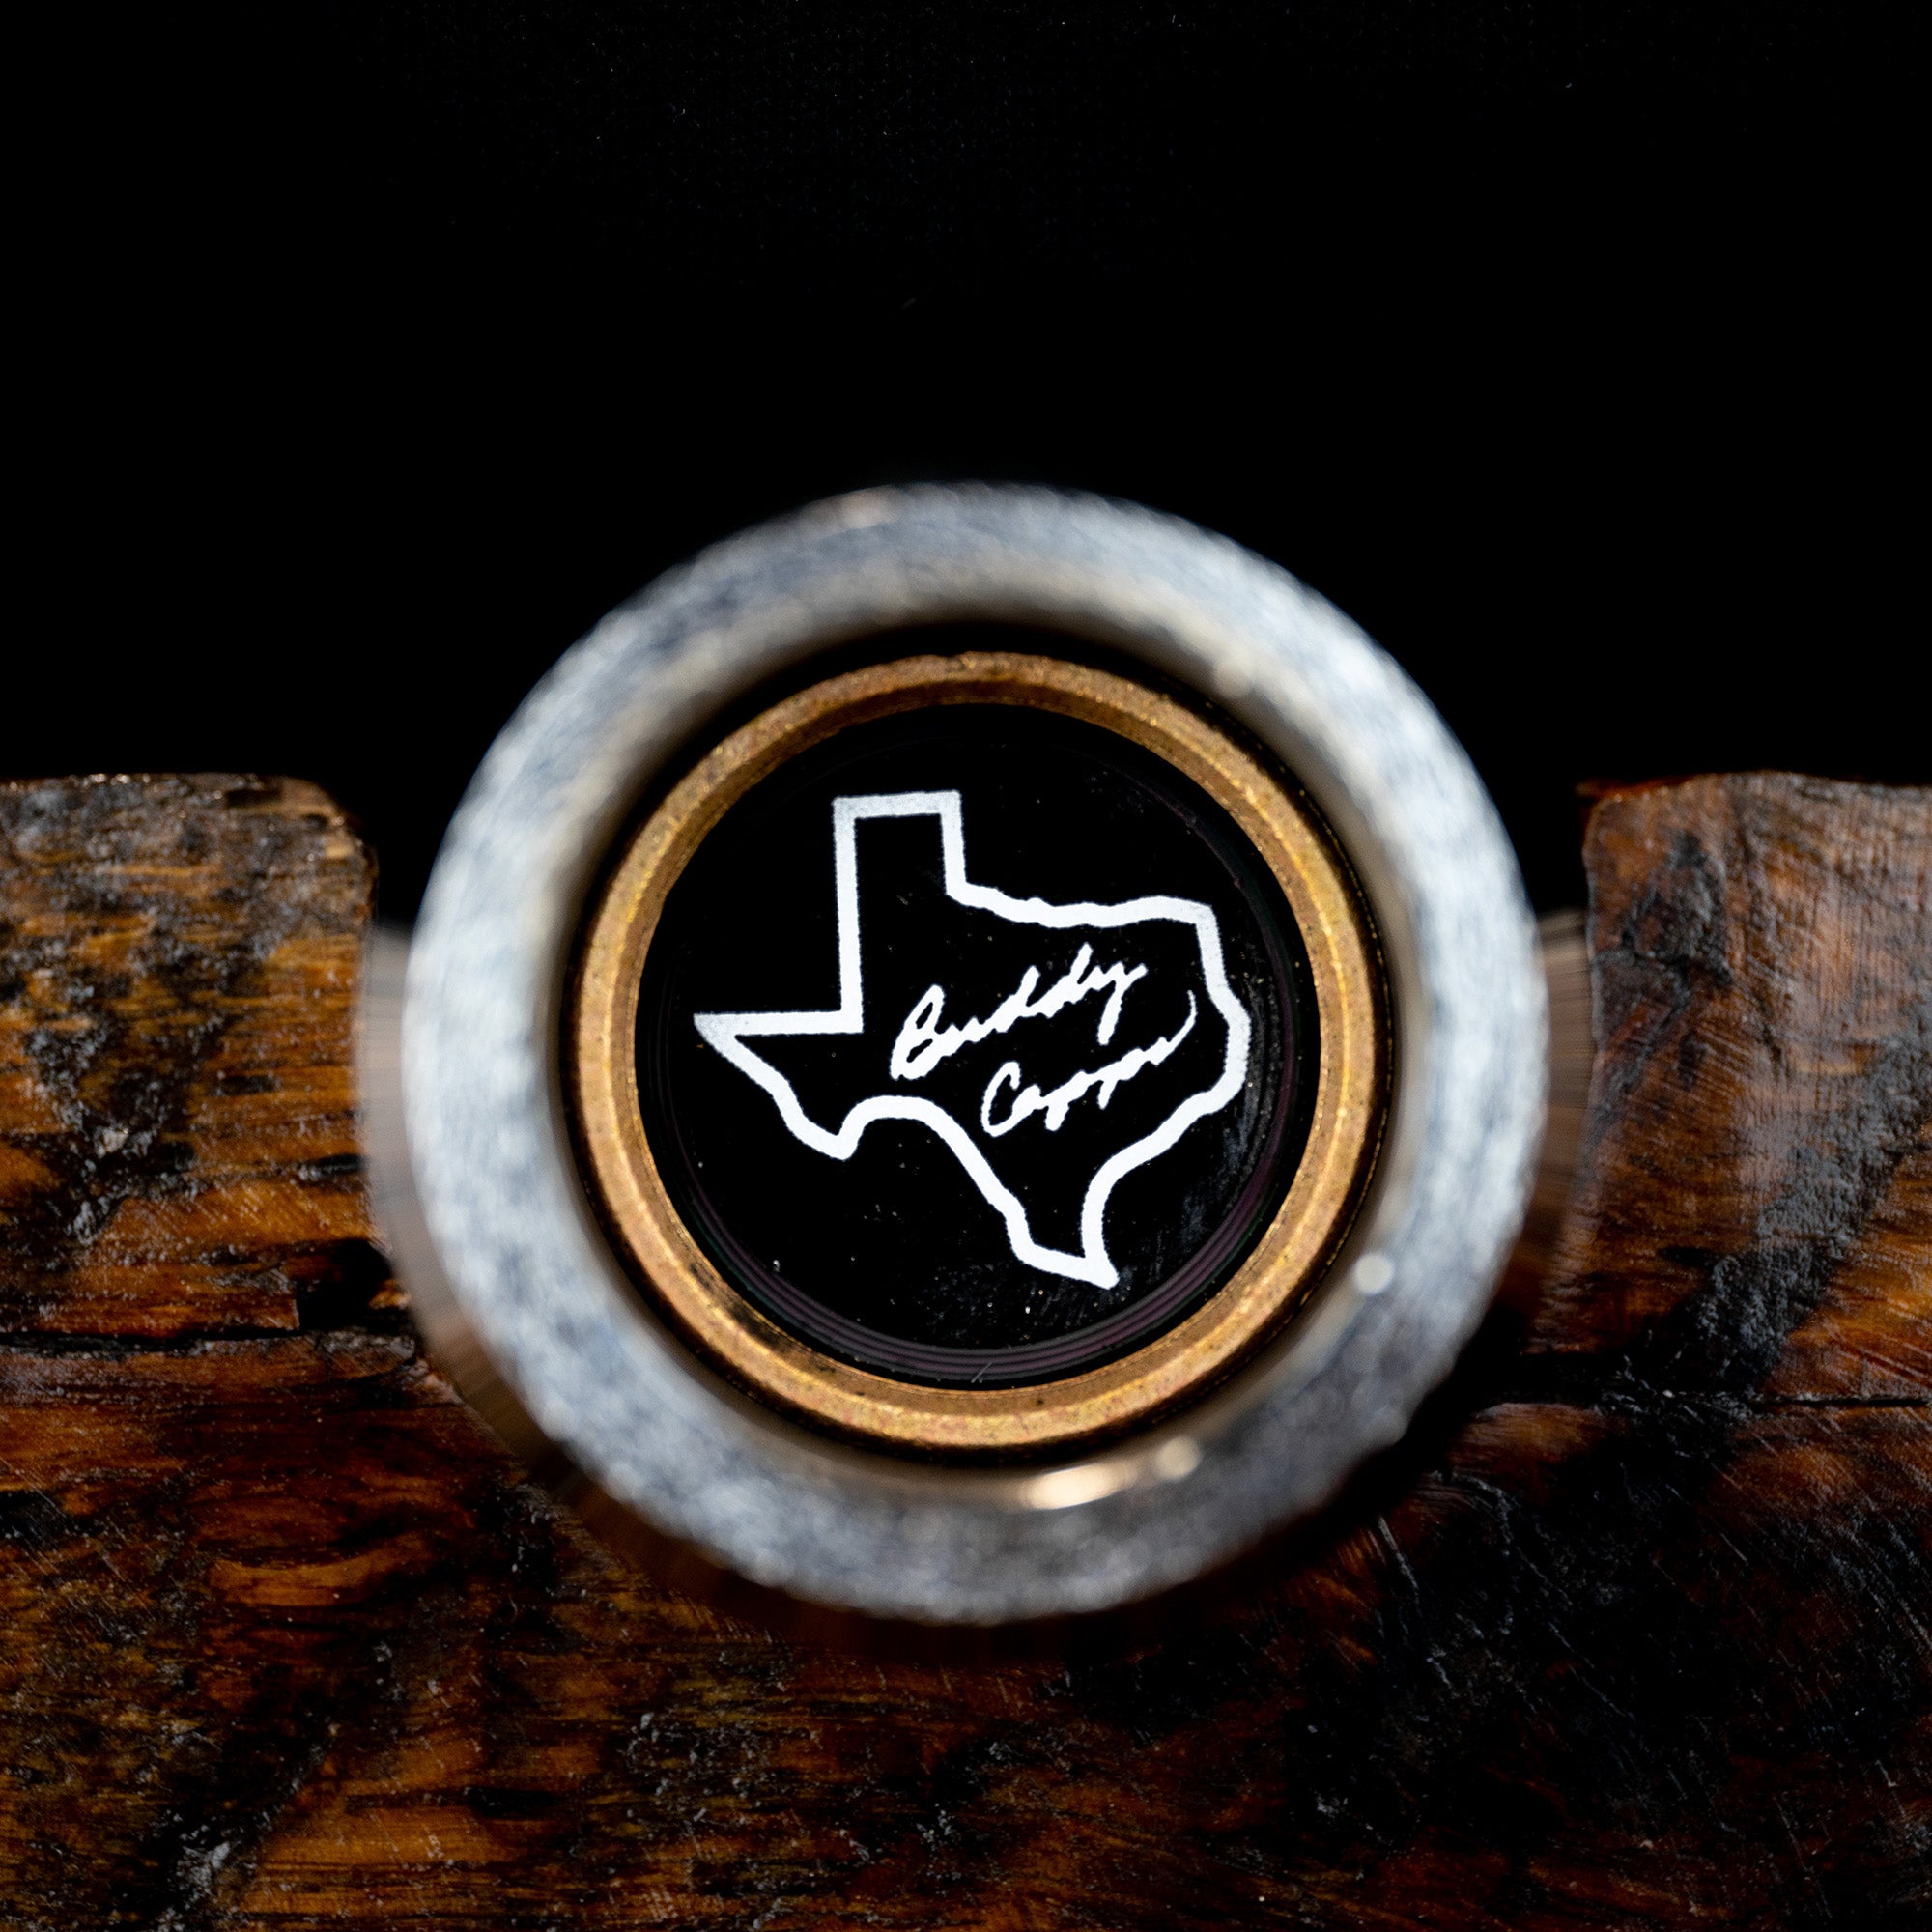 The "Original" Texas Power Bar